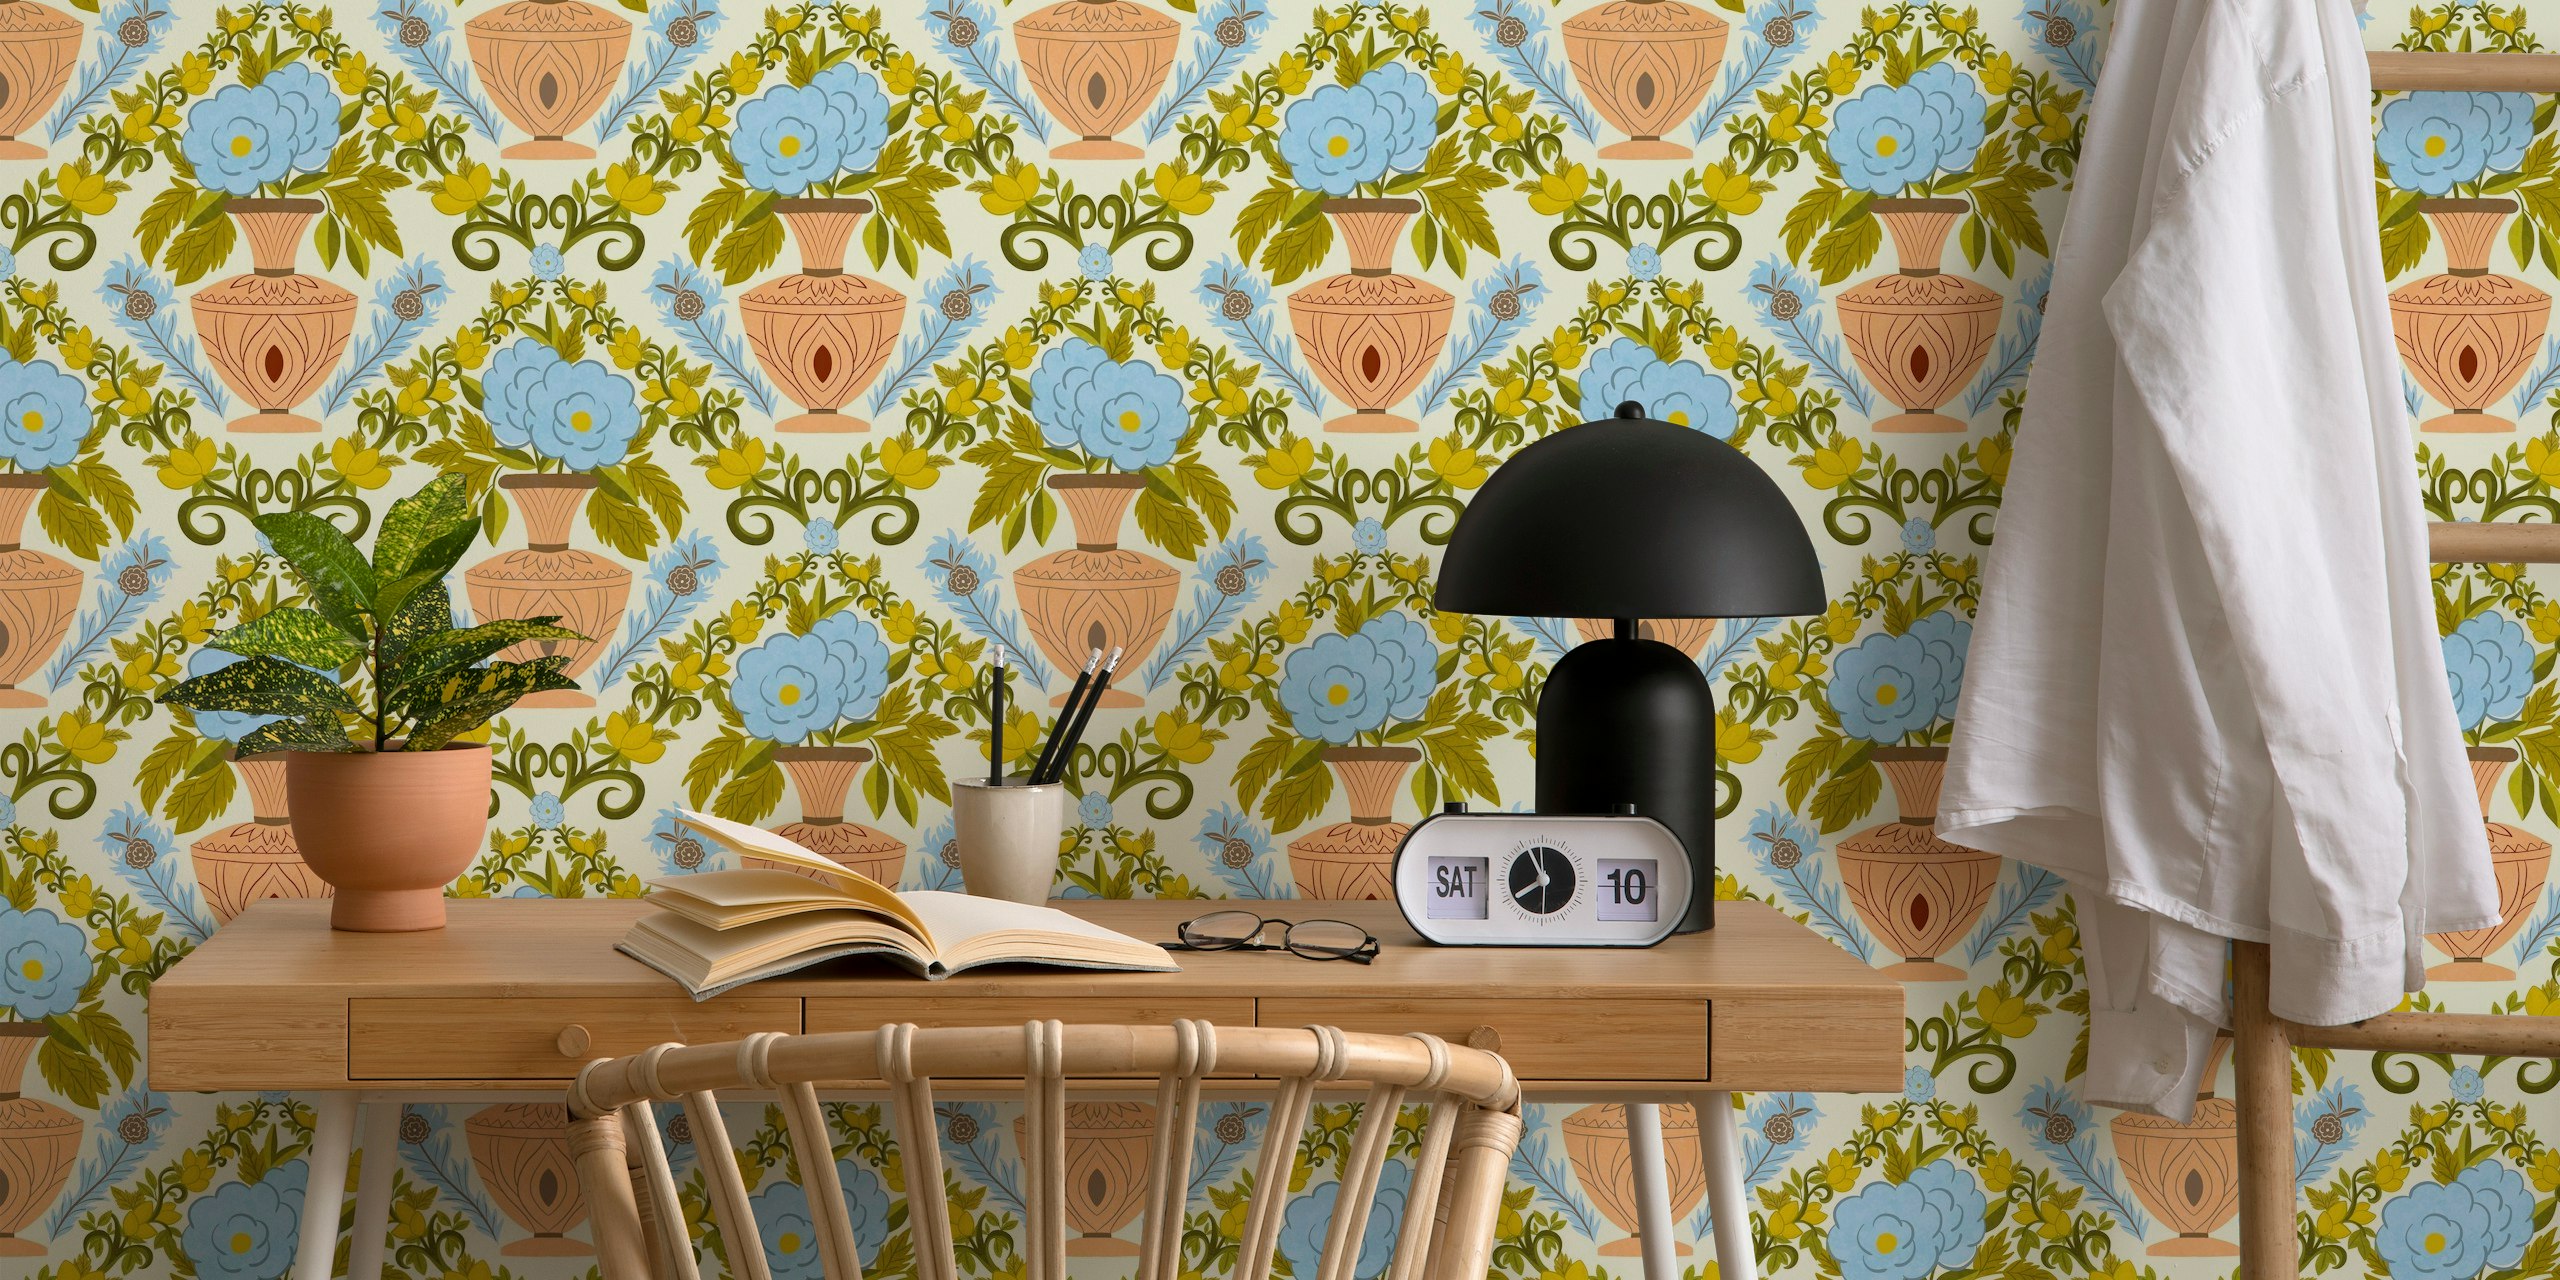 Italian Villa Wallpaper with citrus fruits papel de parede